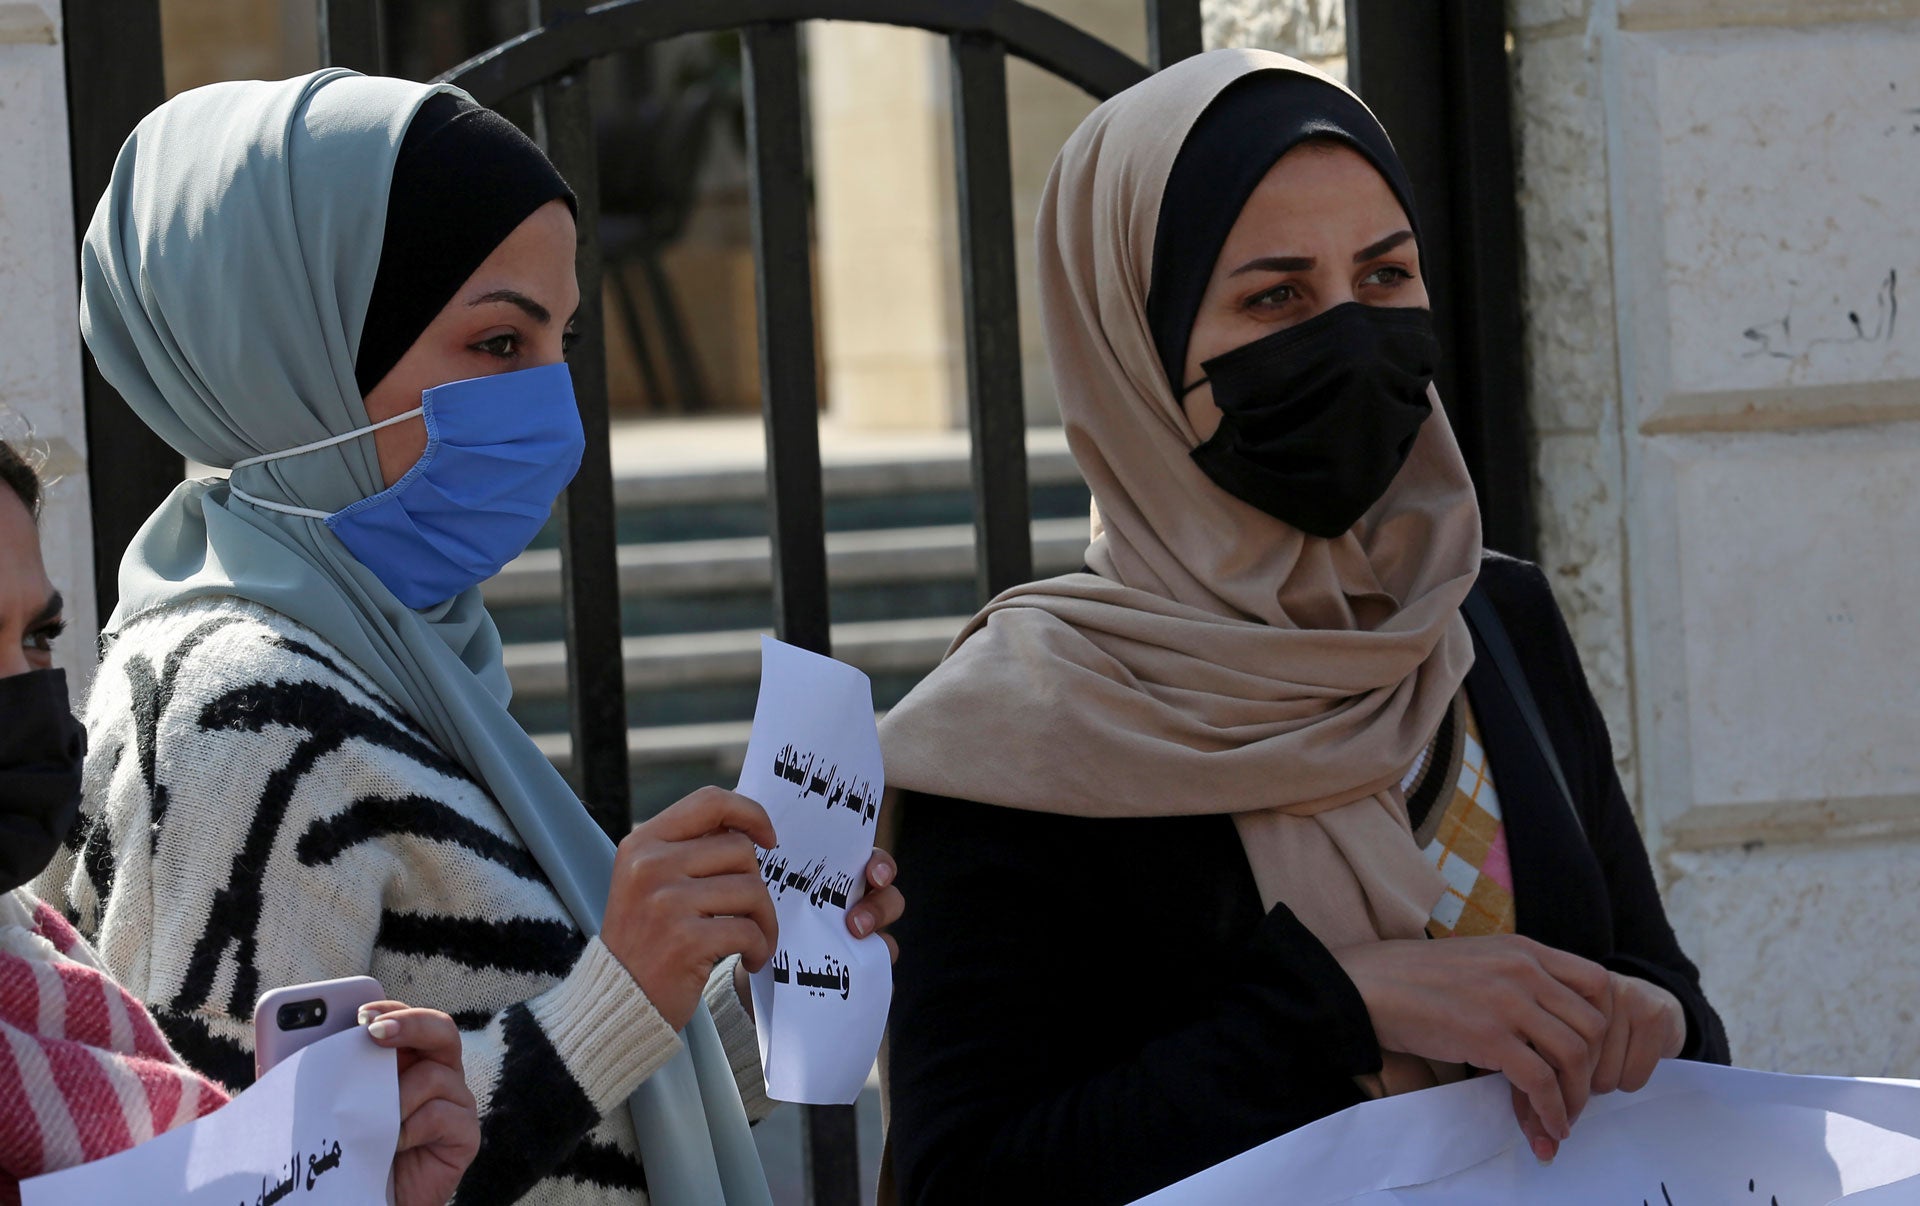 נשים נושאות שלטים במהלך הפגנה נגד החלטת מועצת השריעה העליונה בעזה, האוסרת על נשים לנסוע מהרצועה או אליה ללא אישור ה"אפוטרופוס" שלהן, בעיר עזה, ב-16 בפברואר 2021. 